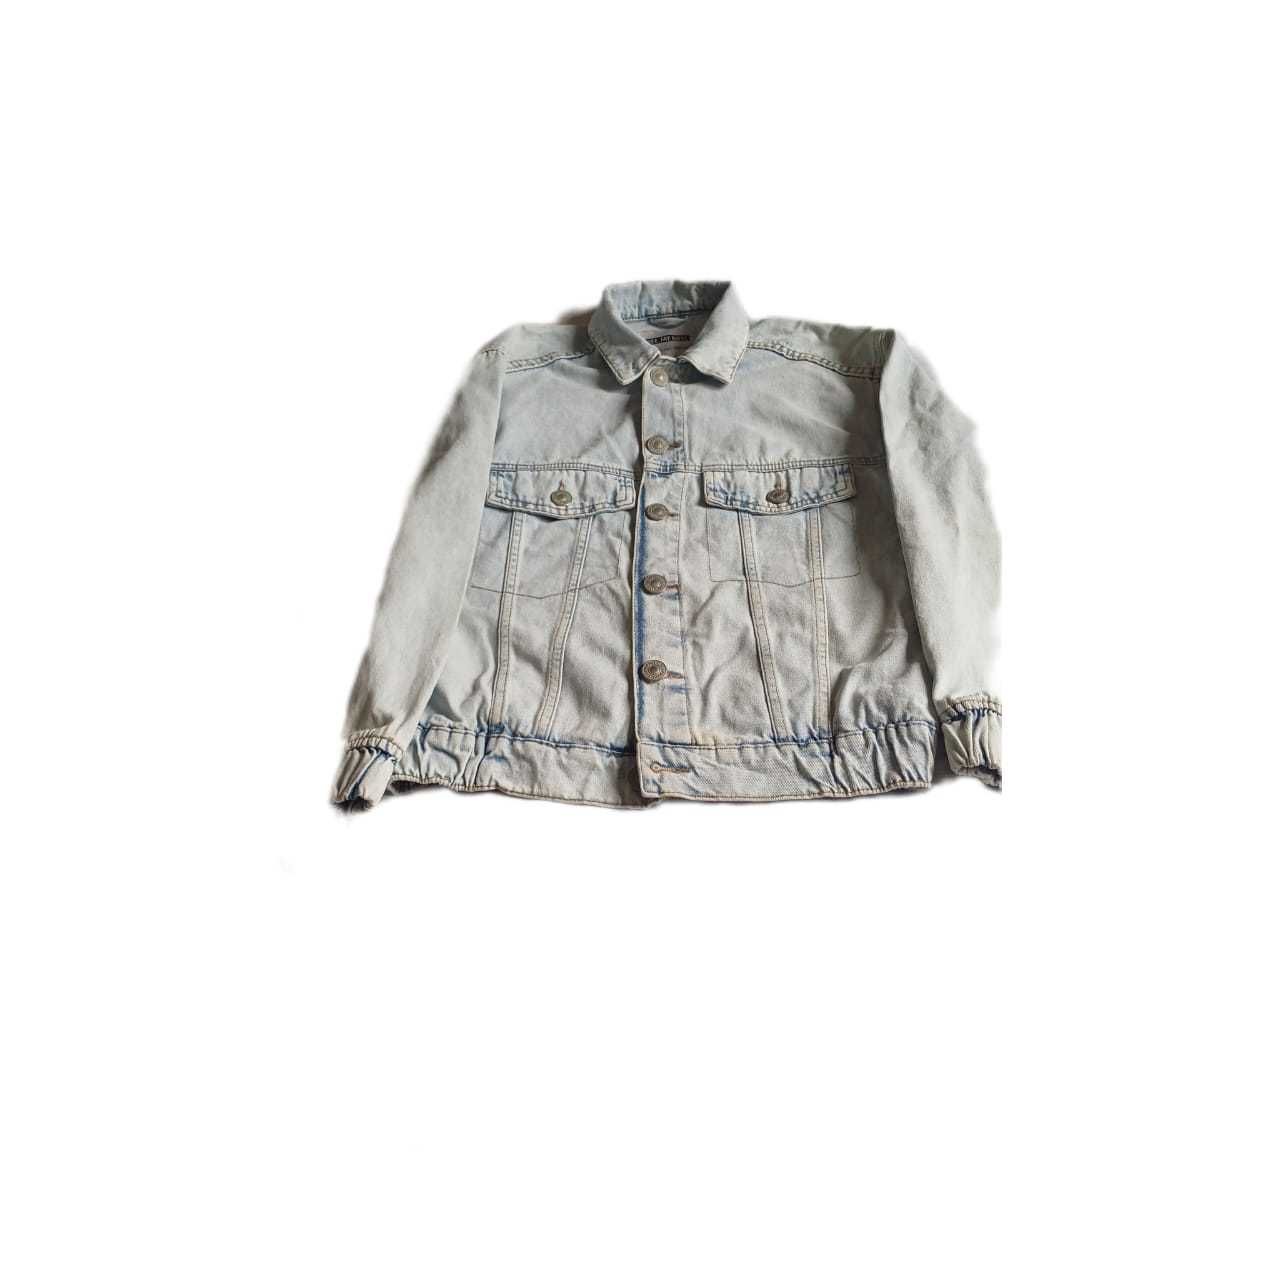 Джинсовая куртка на 10-12 лет  Gloria Jeans  на мальчика или девочку .